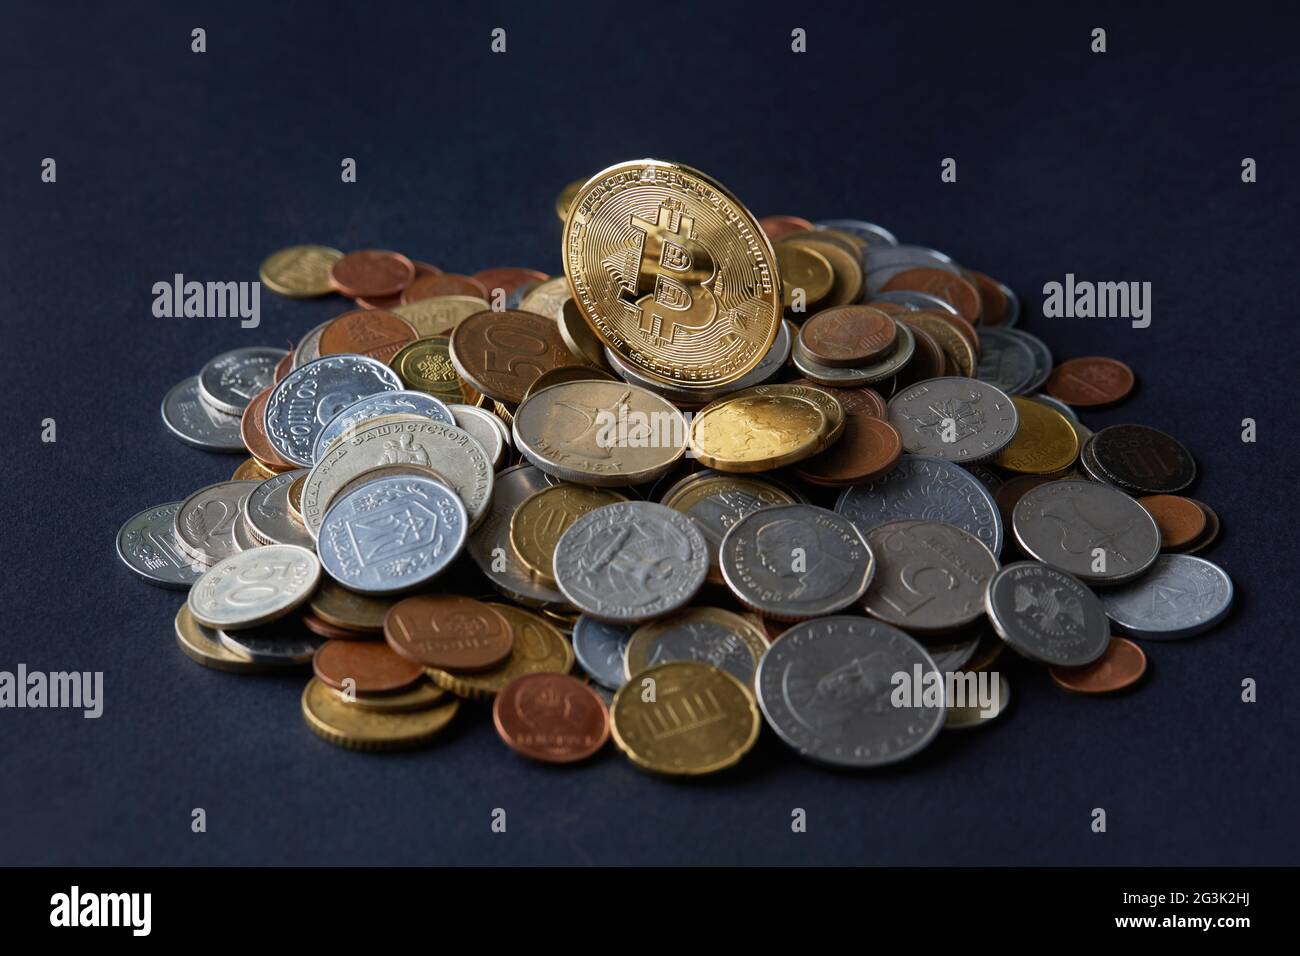 Des pièces de monnaie en bitcoin dorées et brillantes en plus des différentes monnaies du monde, représentant un choix de différentes options de paiement et d'investissement. Banque D'Images